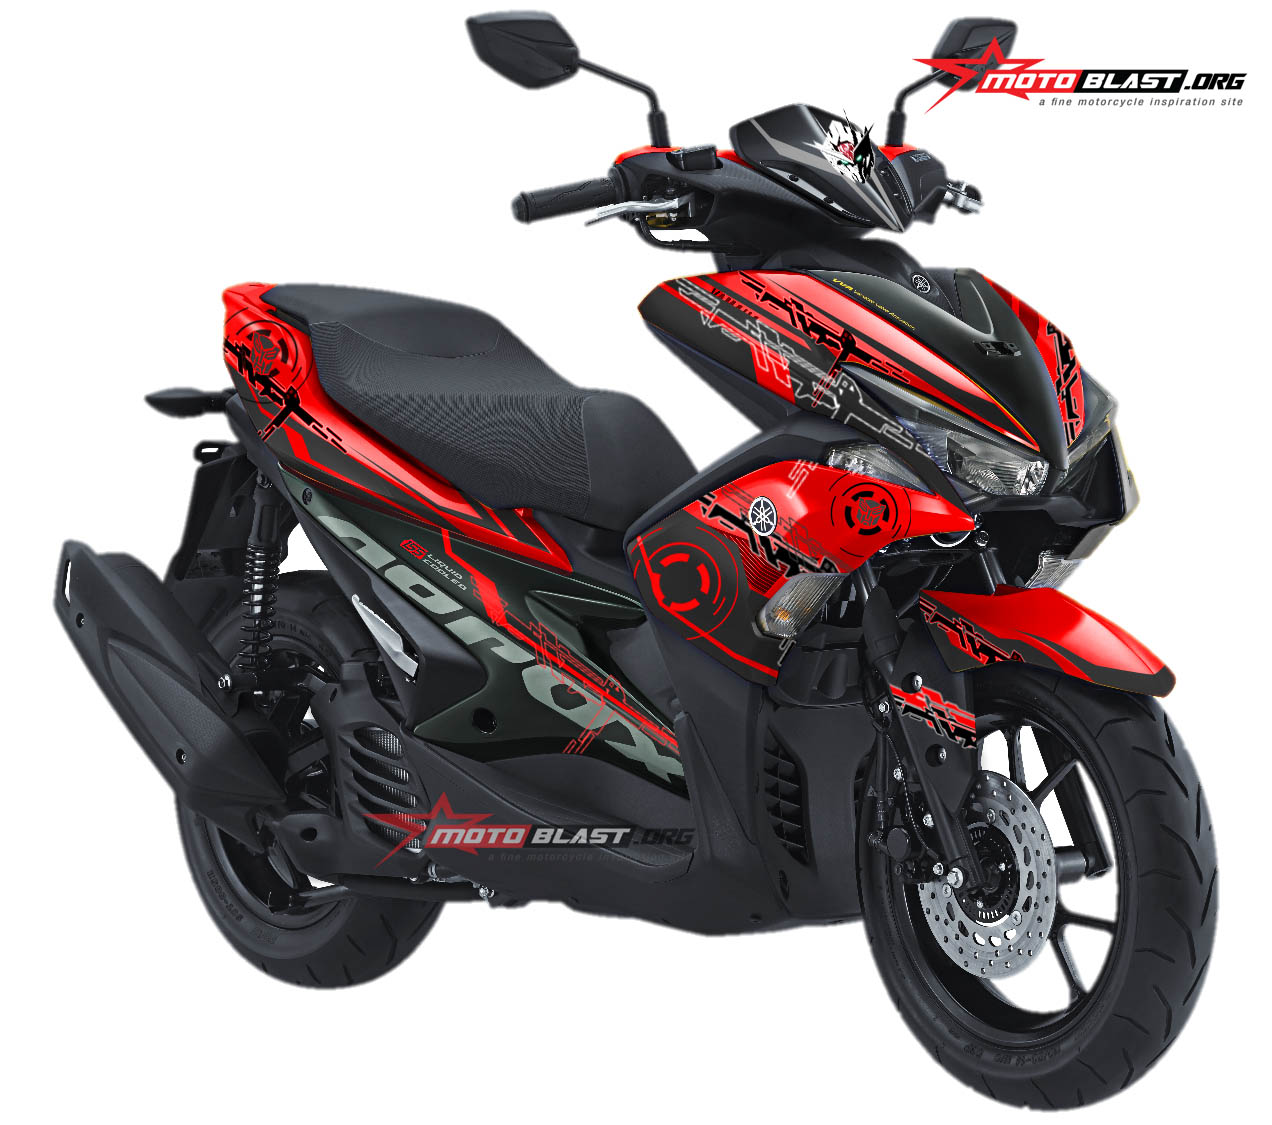 Motoblast Modifikasi Striping Yamaha Aerox 155 Red Techno